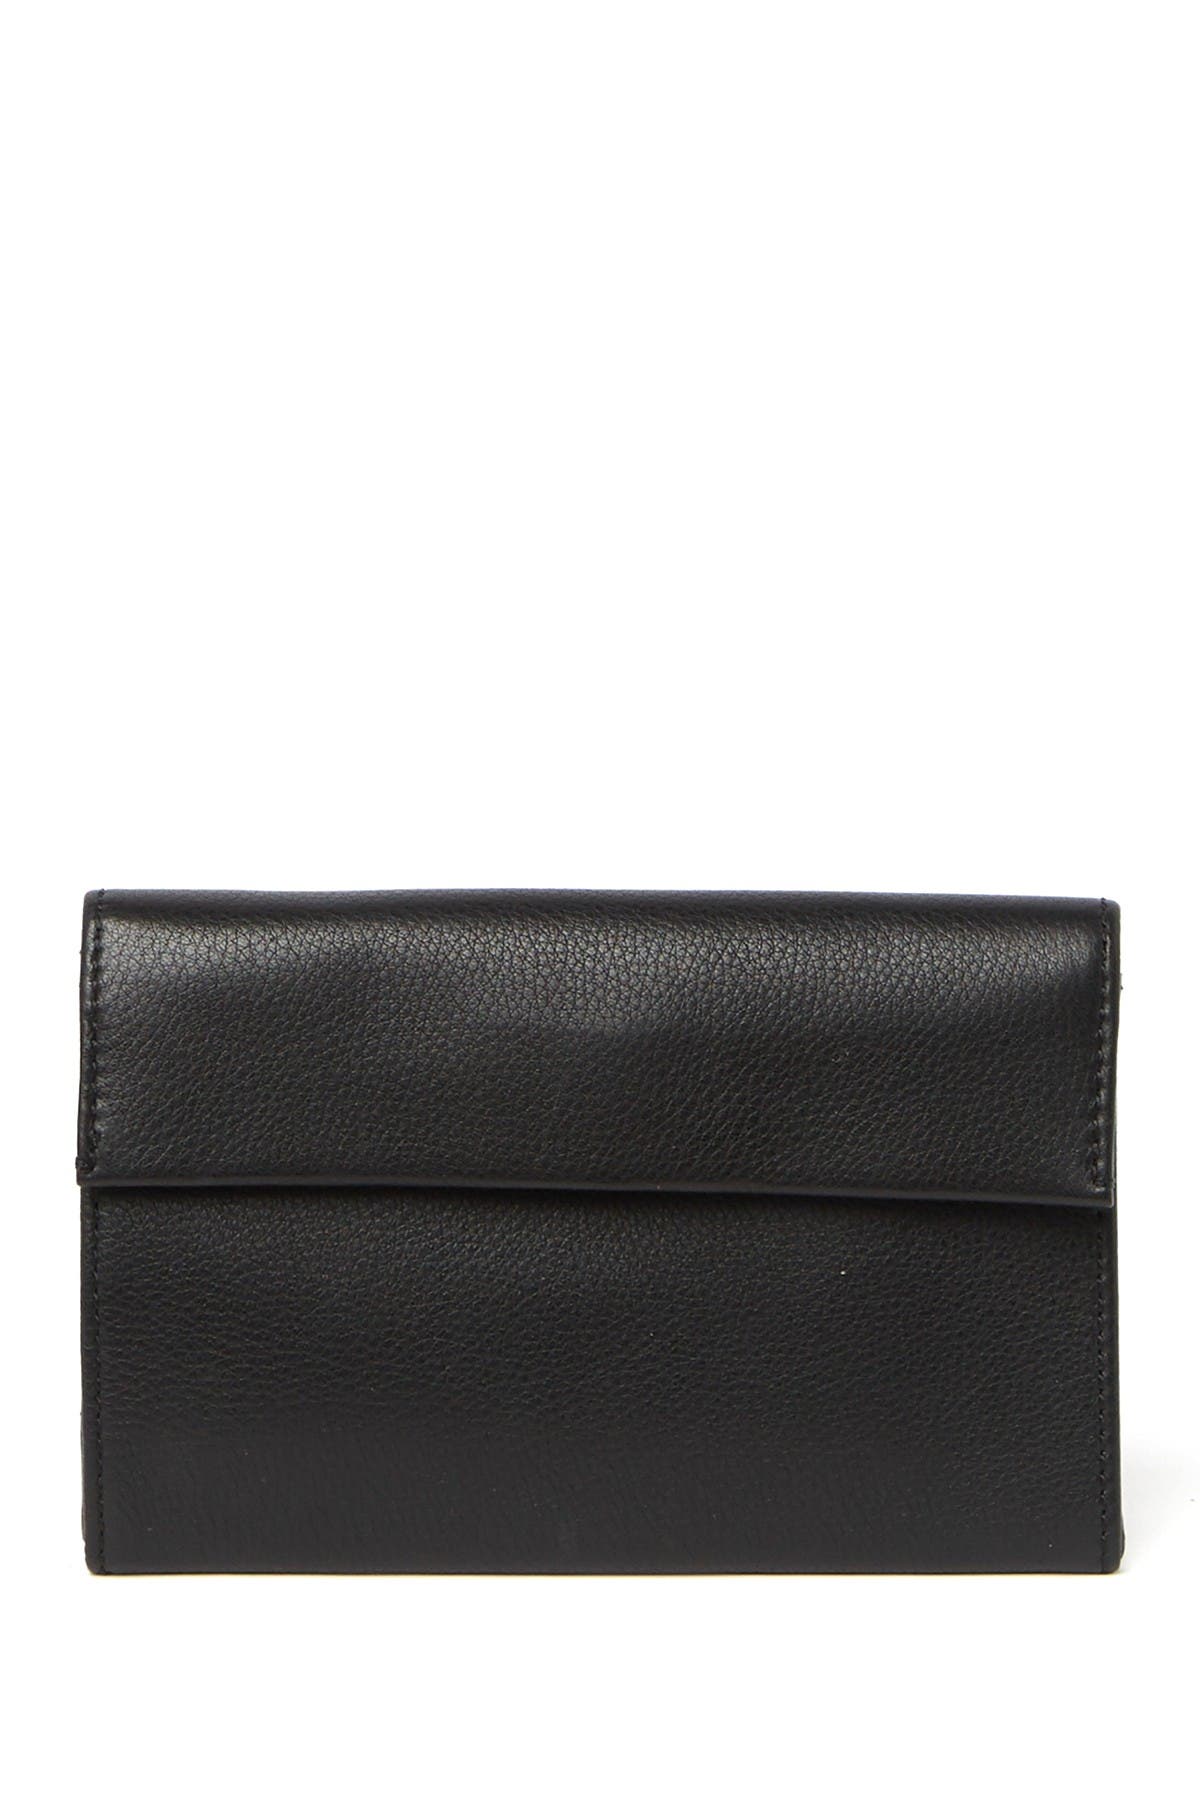 Hobo Ember Flap Wallet In Black